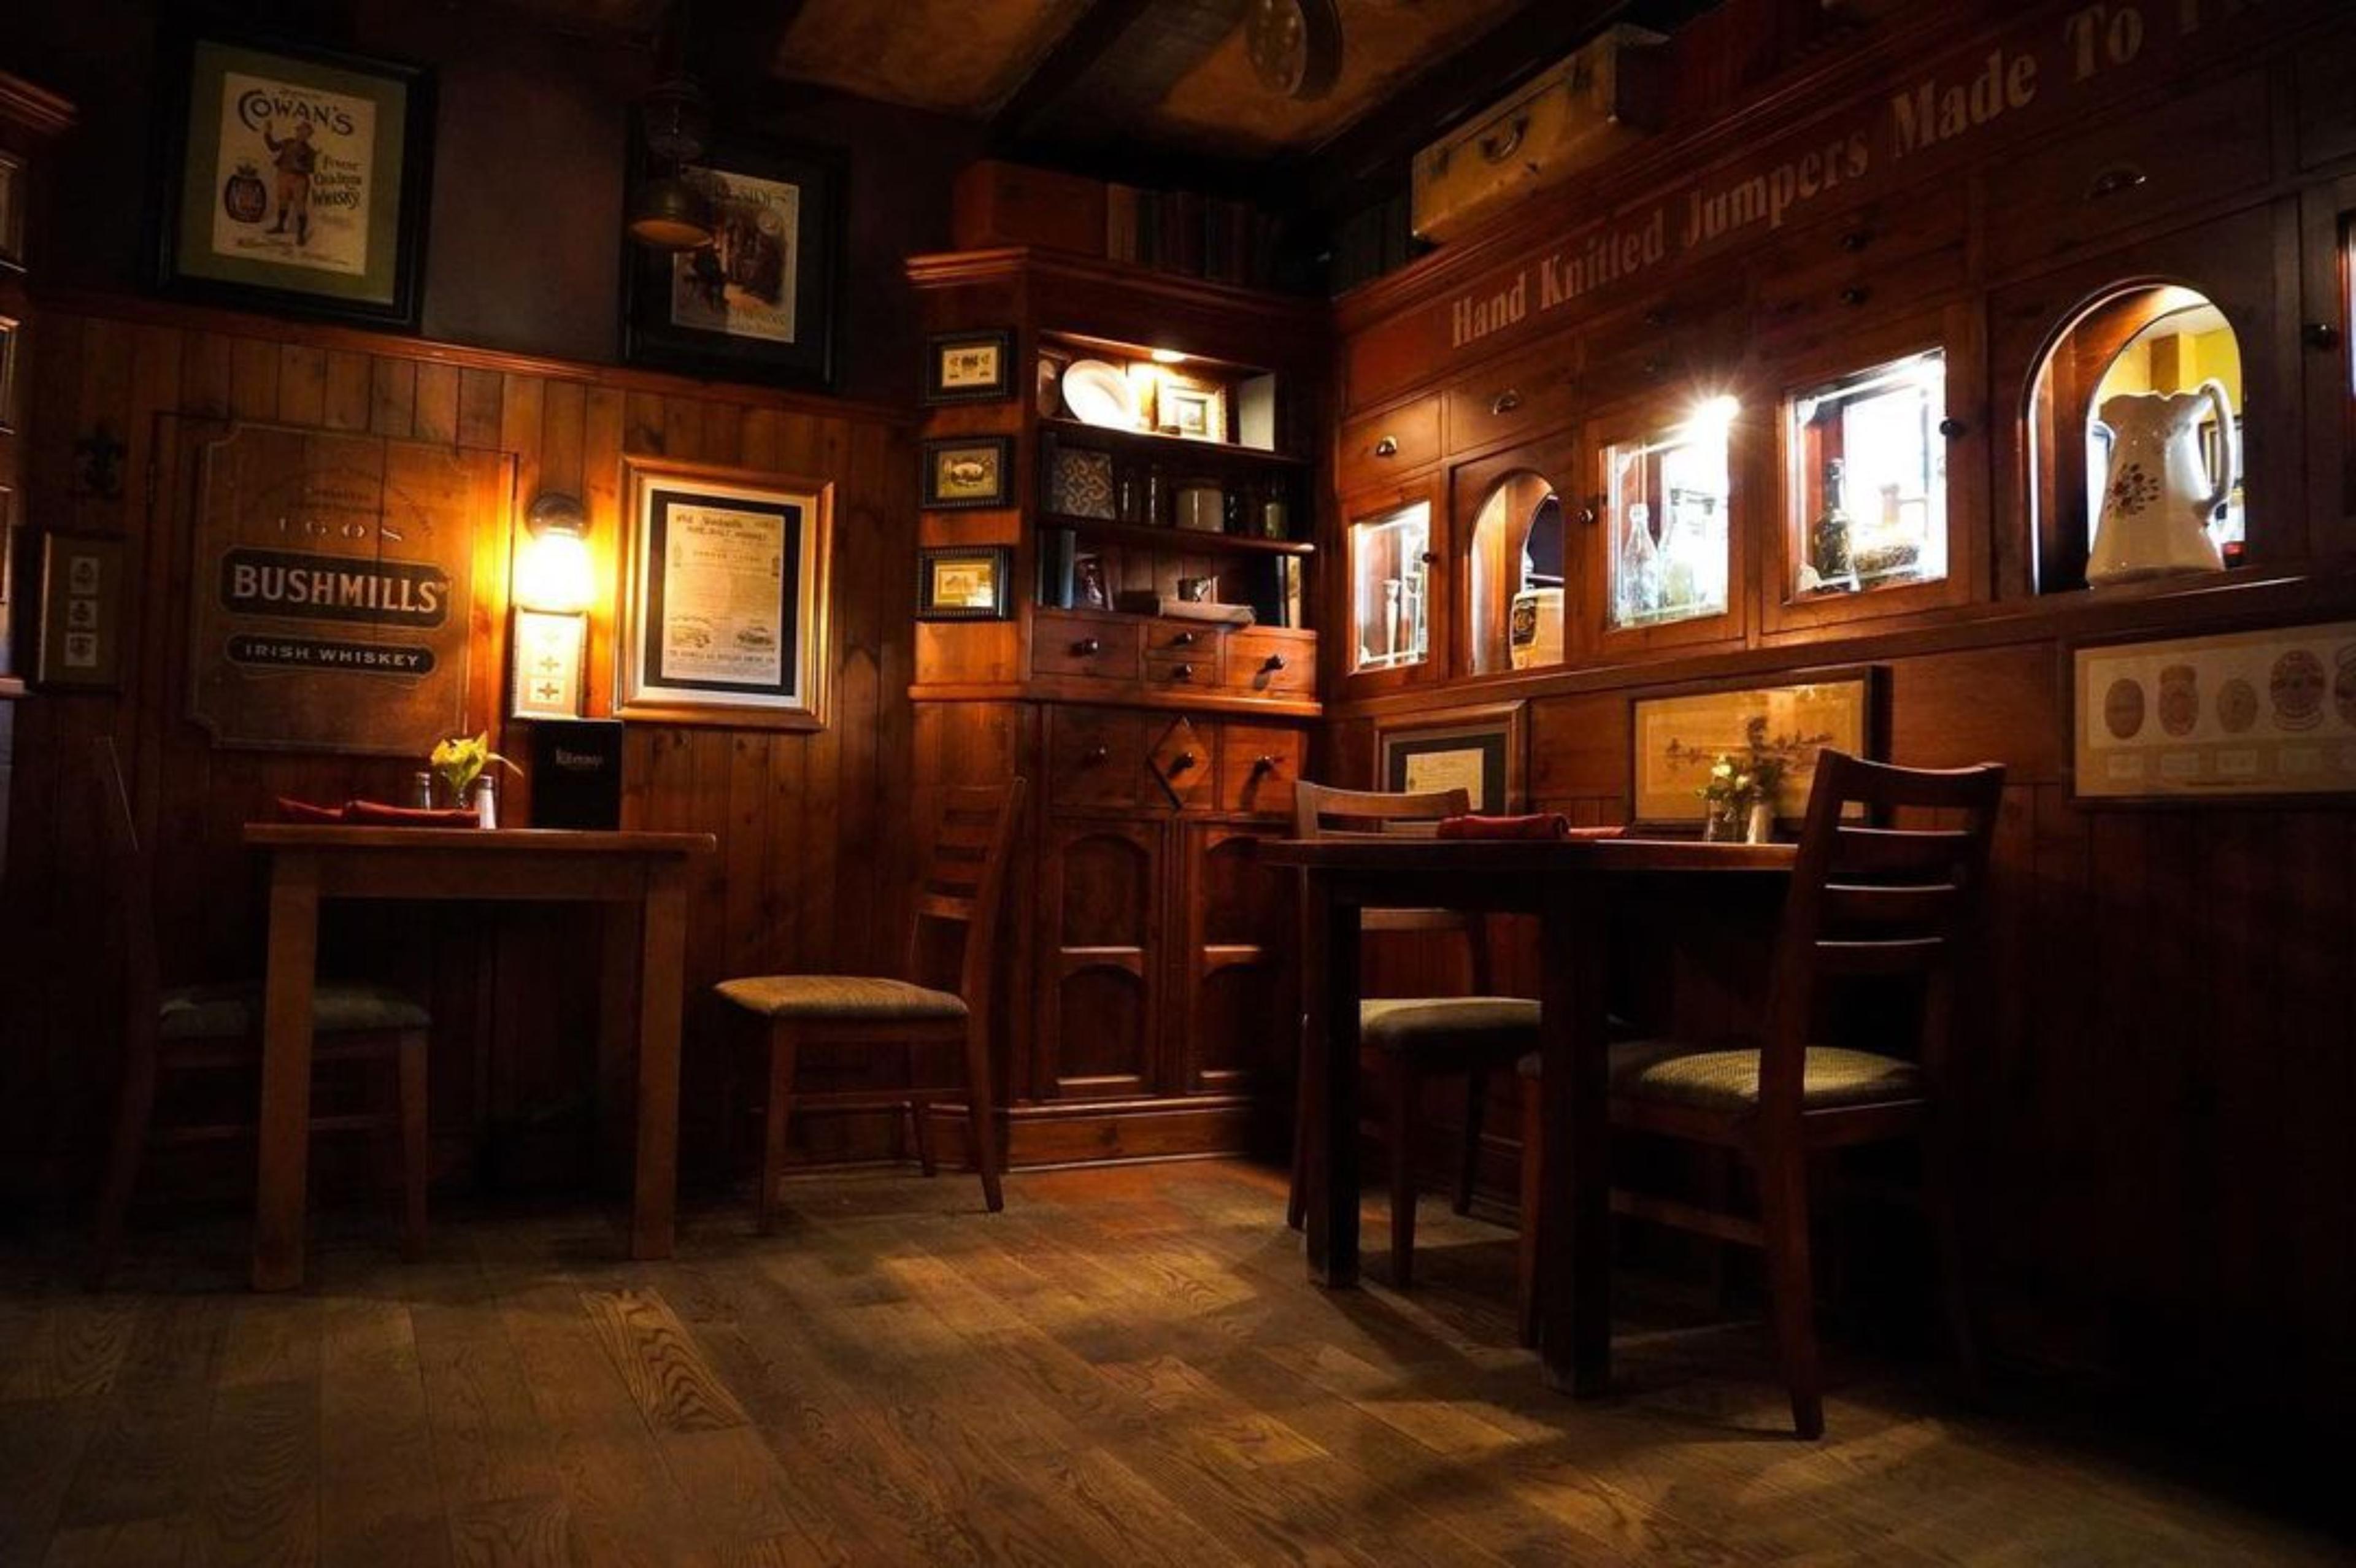 Kilkenny's Irish Pub